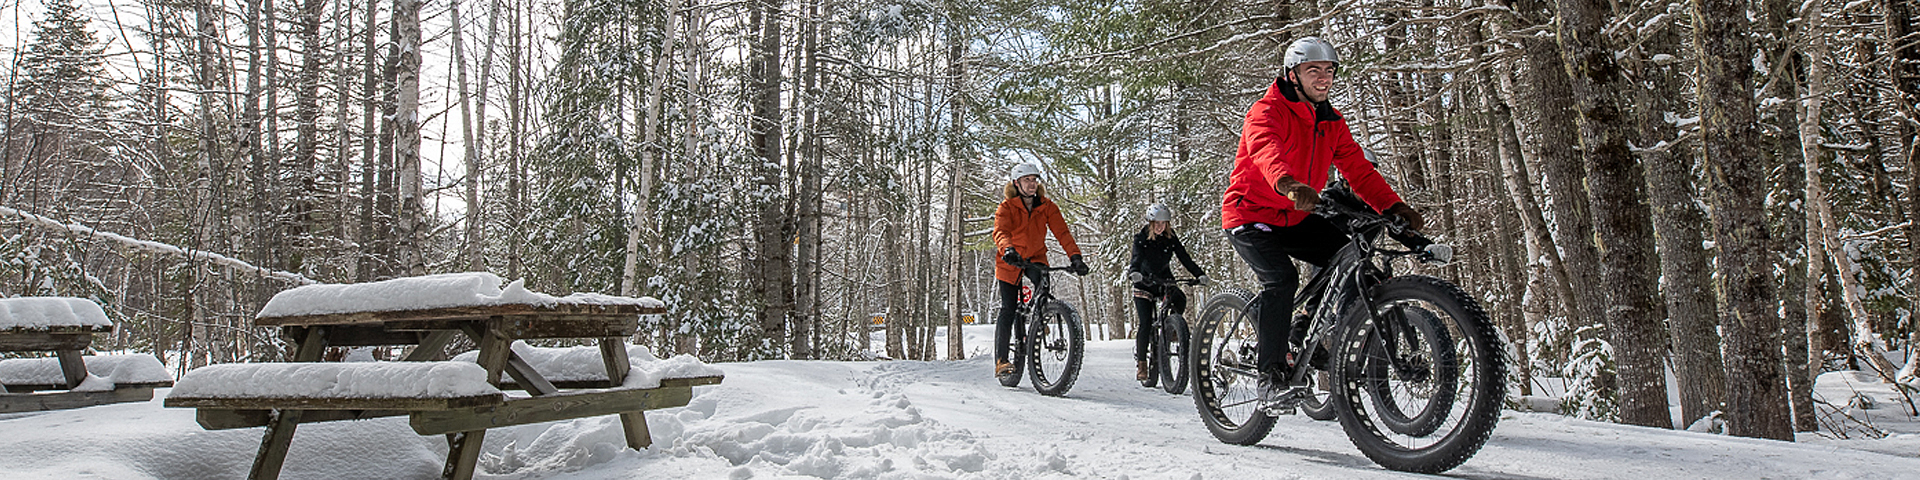 Visiteurs en vélo à pneus surdimensionnés sur la neige dans le parc.